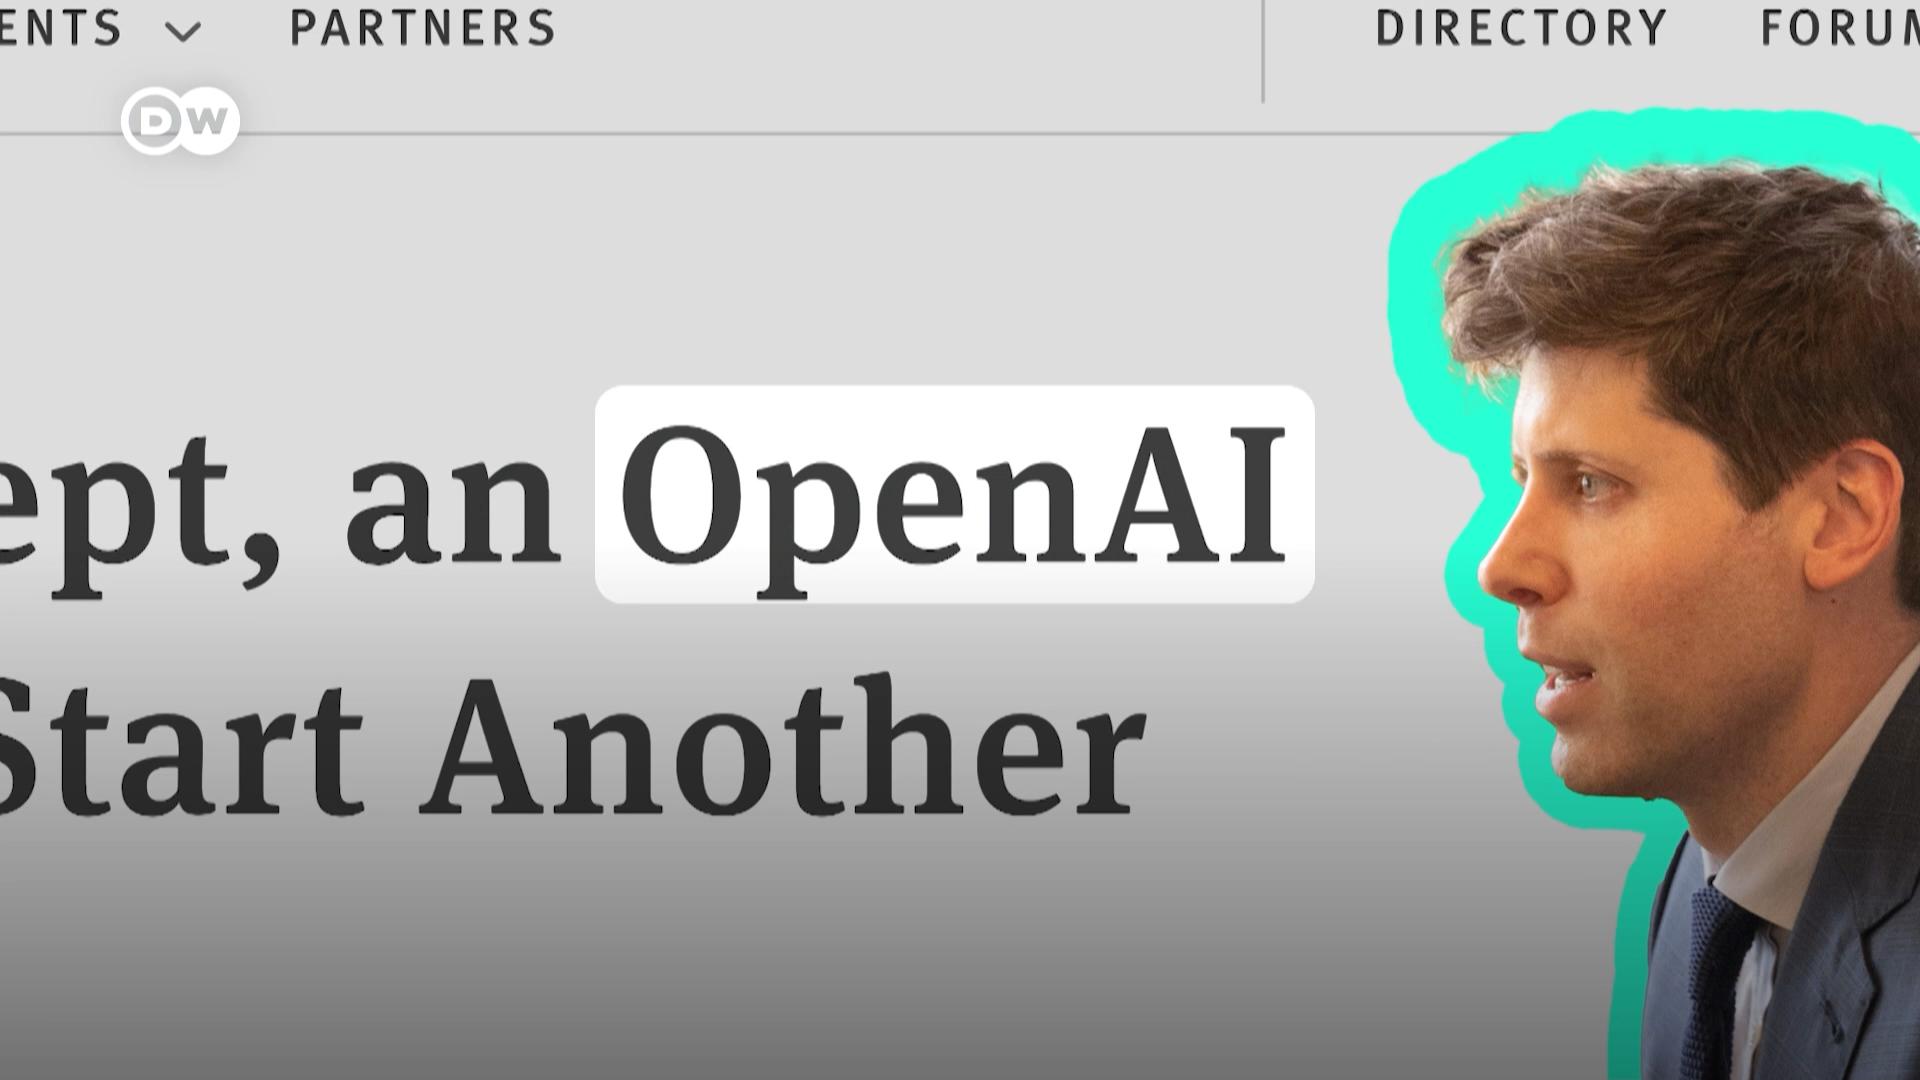 萨姆·奥特曼(Sam Altman)是当前人工智能热潮中最显眼的面孔。他的公司OpenAI开发了ChatGPT——这个人工智能聊天机器人使得人工智能可供每个人使用。但他的成功也随时需要受到公众的审视。